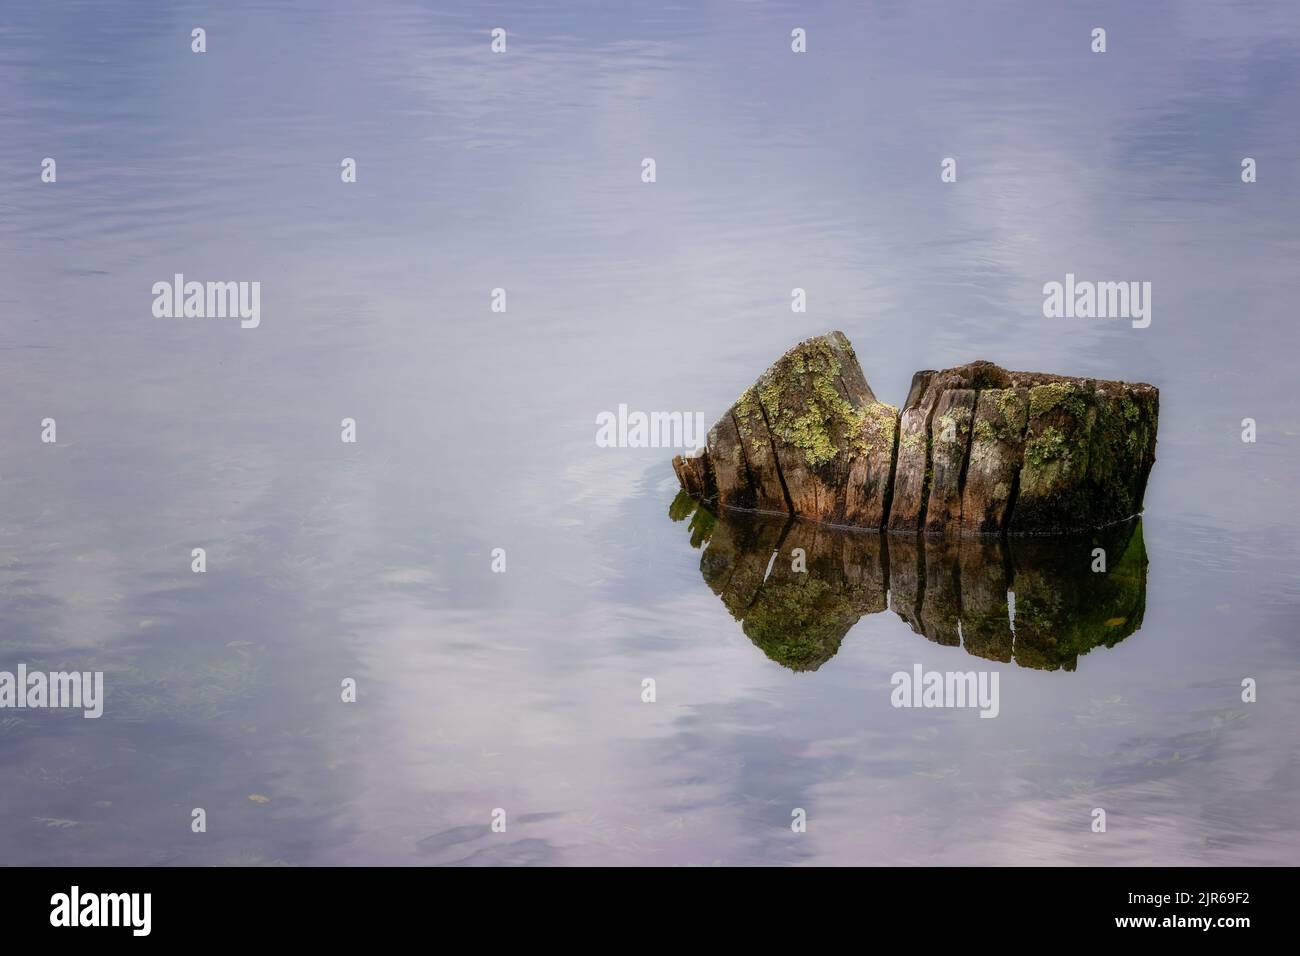 Arrière-plan et espace de copie disponibles dans cette image d'une ancienne souche d'arbre entourée d'eau. Banque D'Images